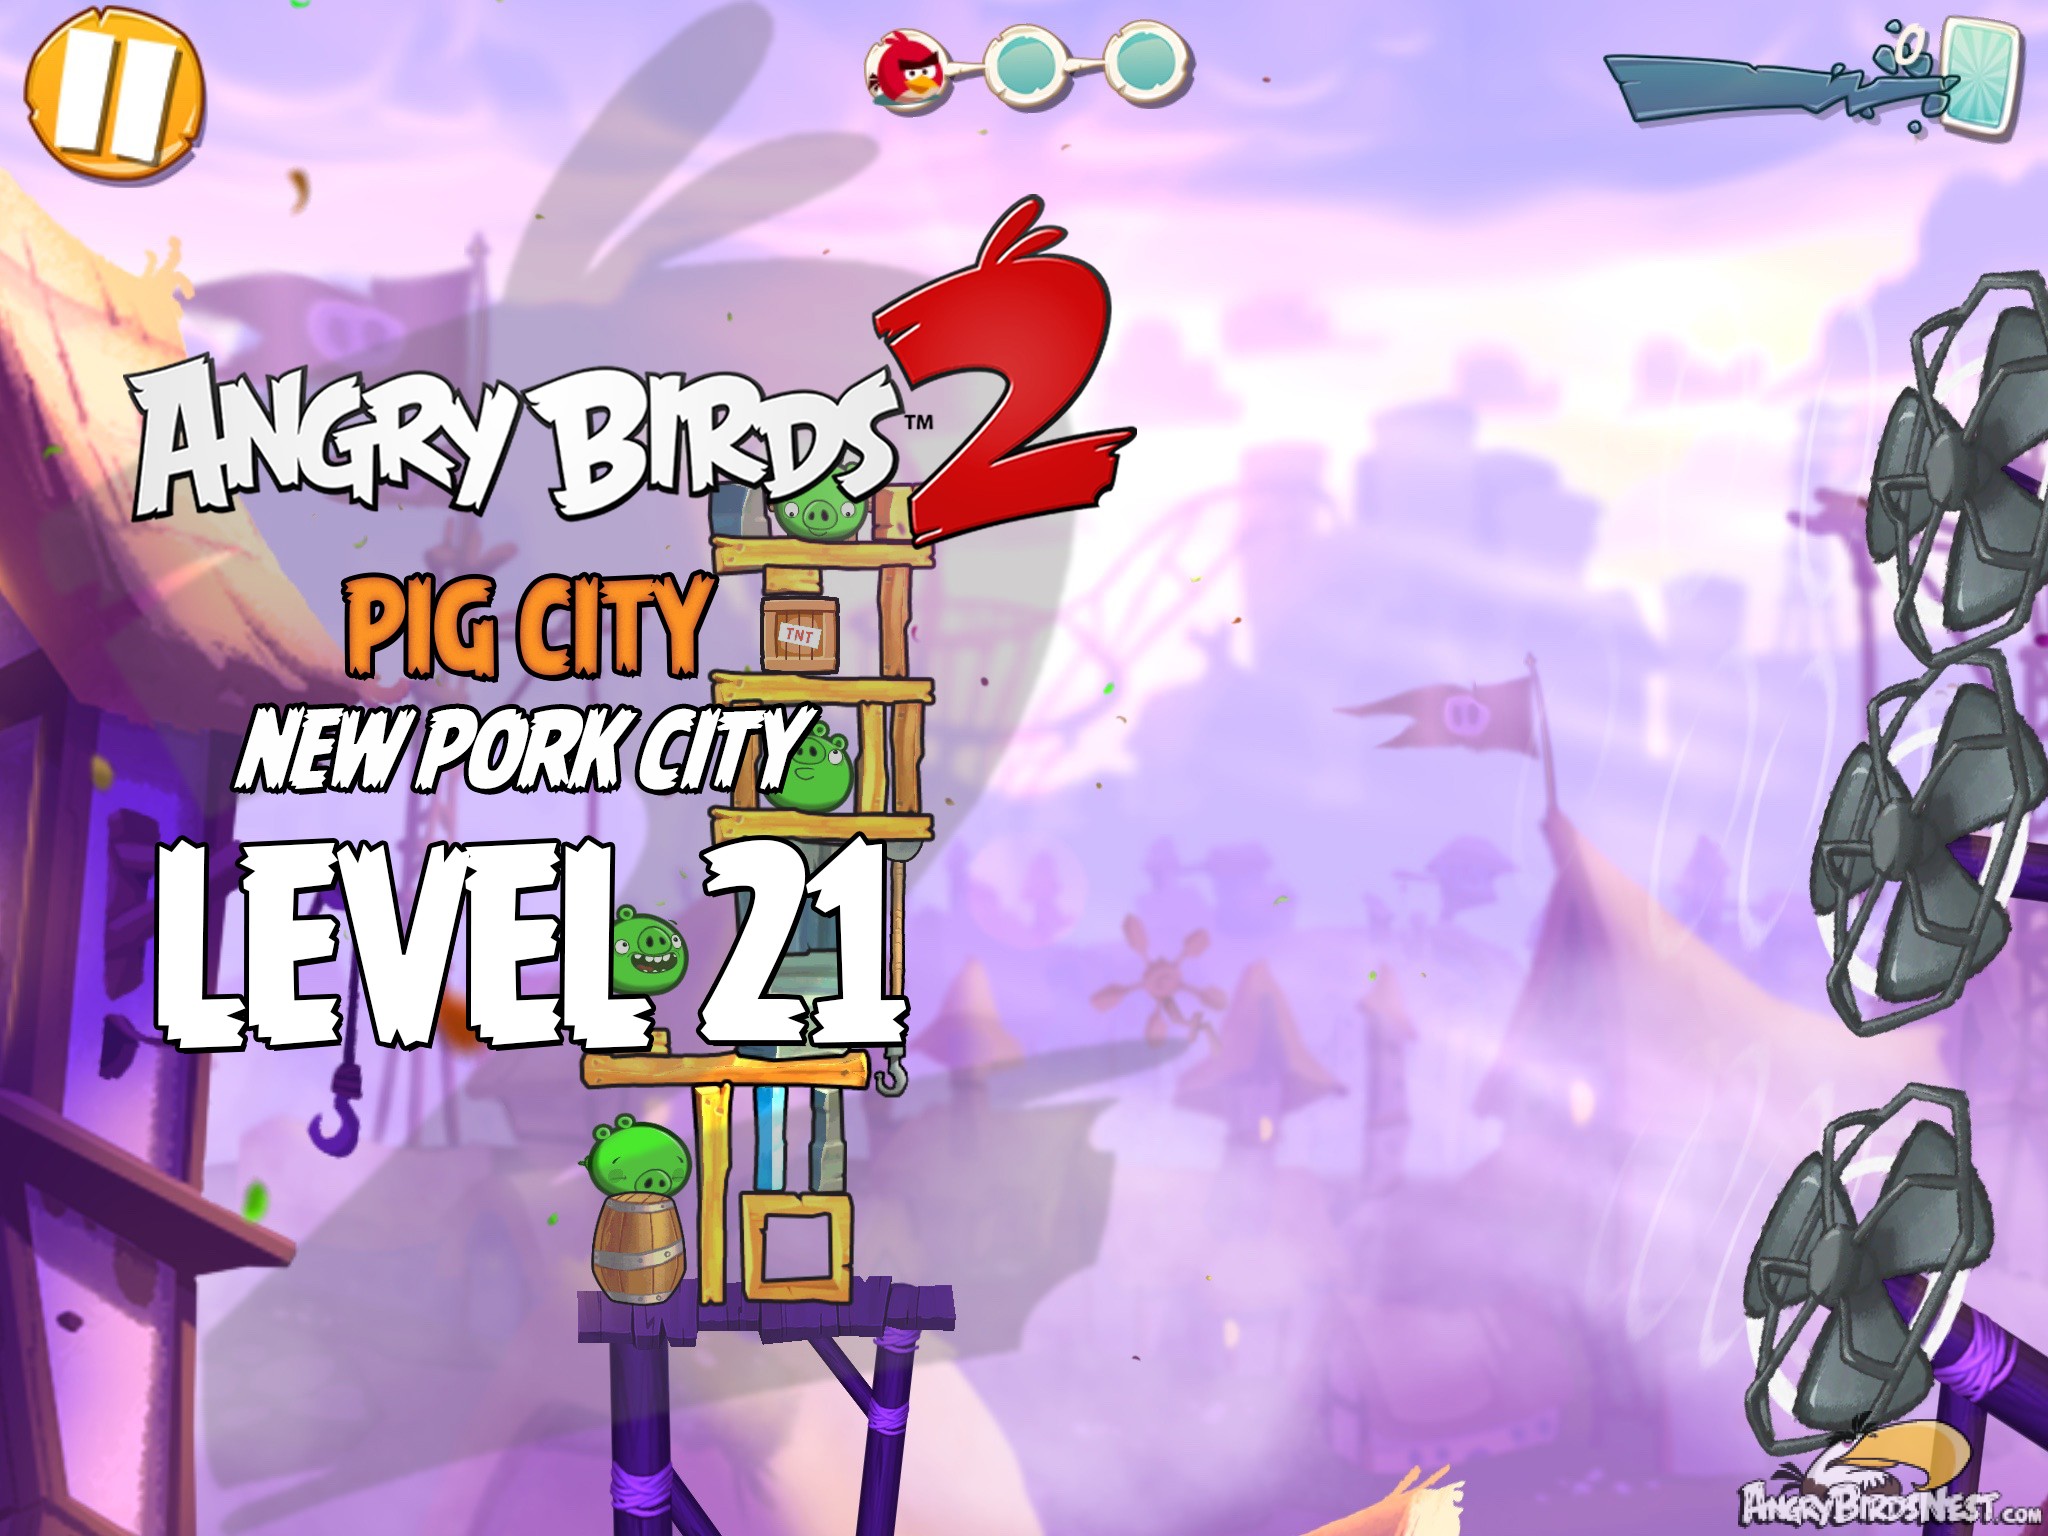 Angry Birds 2 Pig City New Pork City Level 21